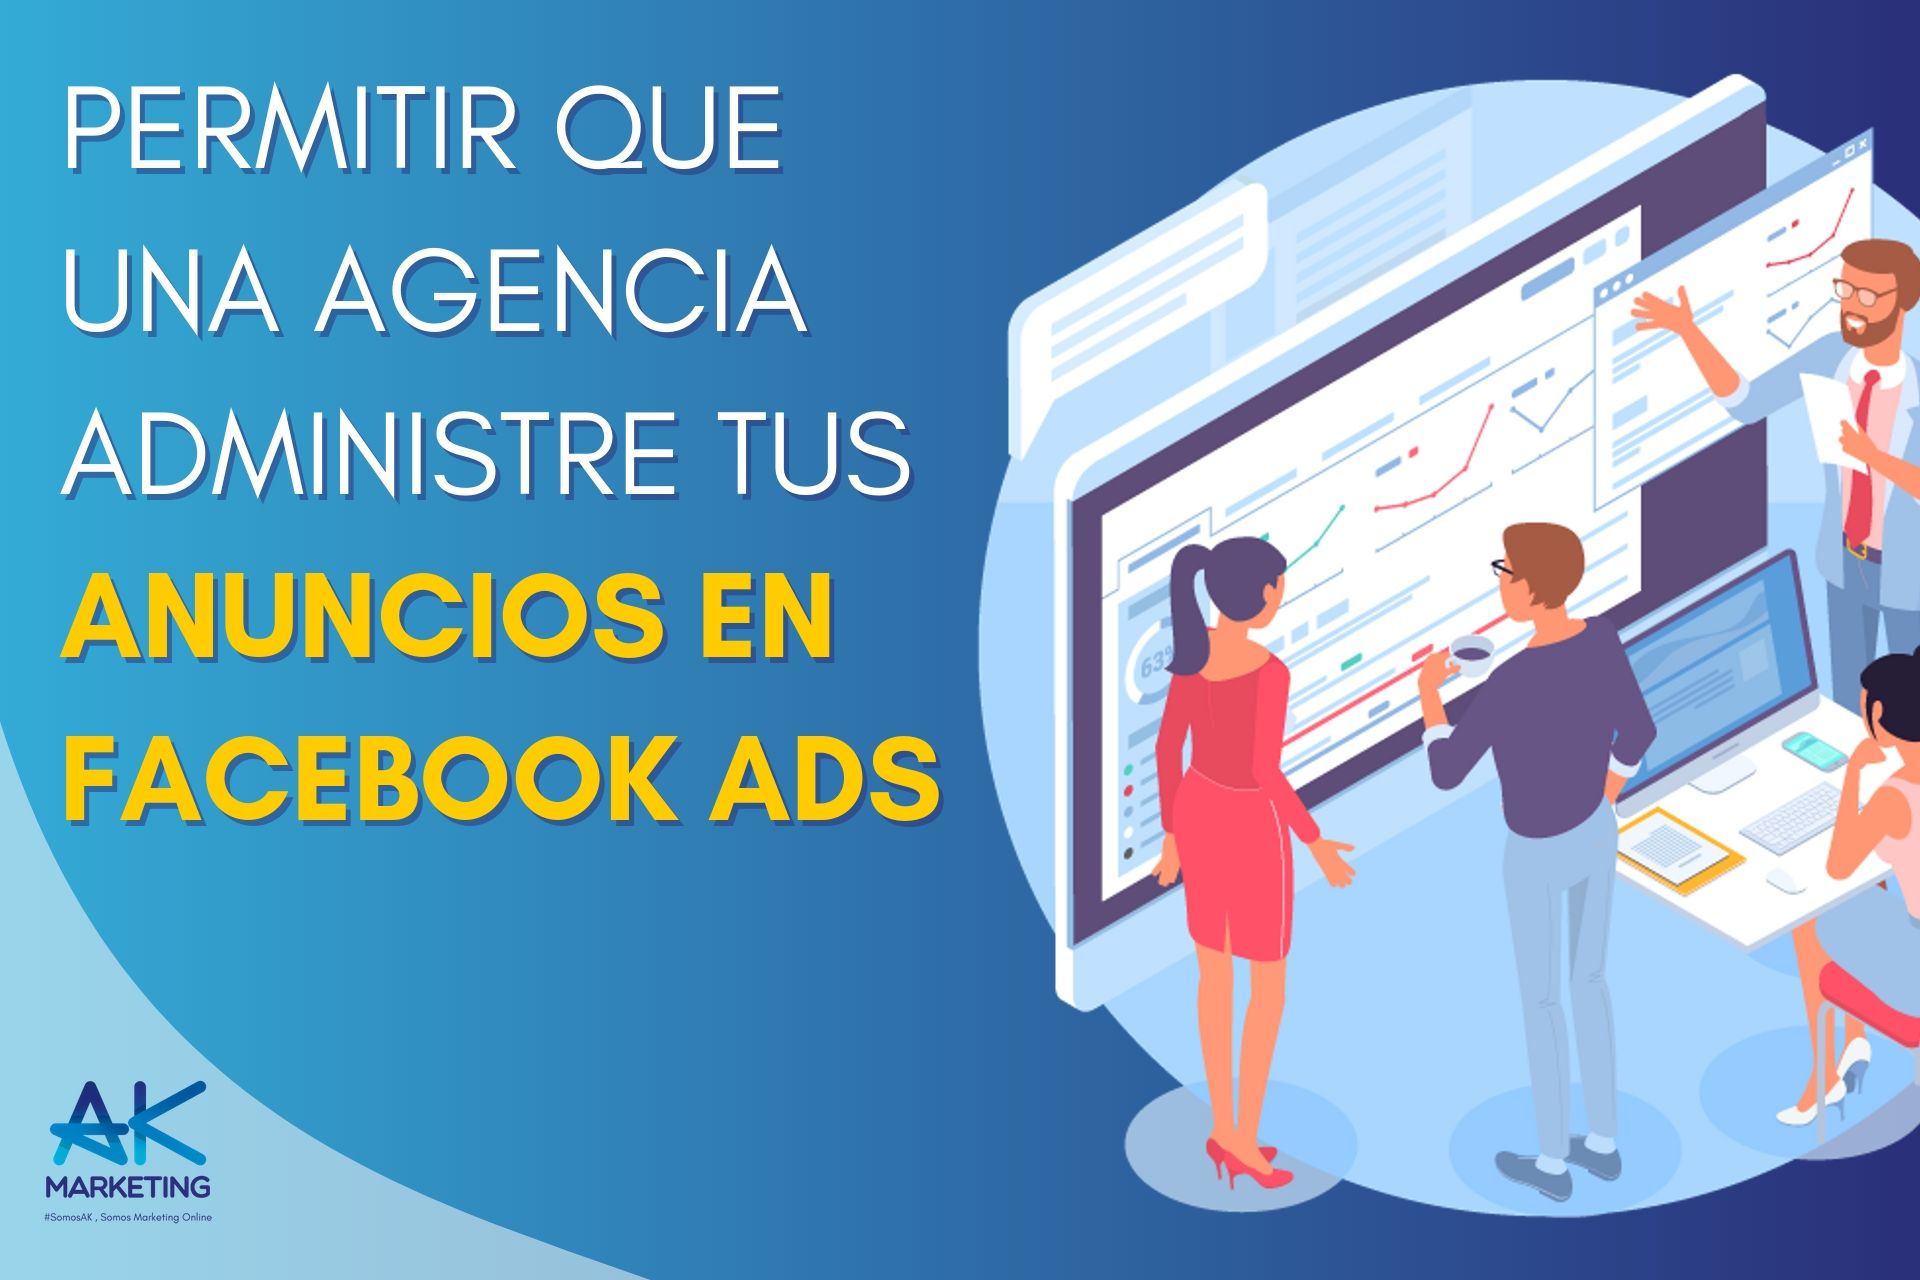 conceder permisos a una agencia para administrar tus anuncios de facebook ads